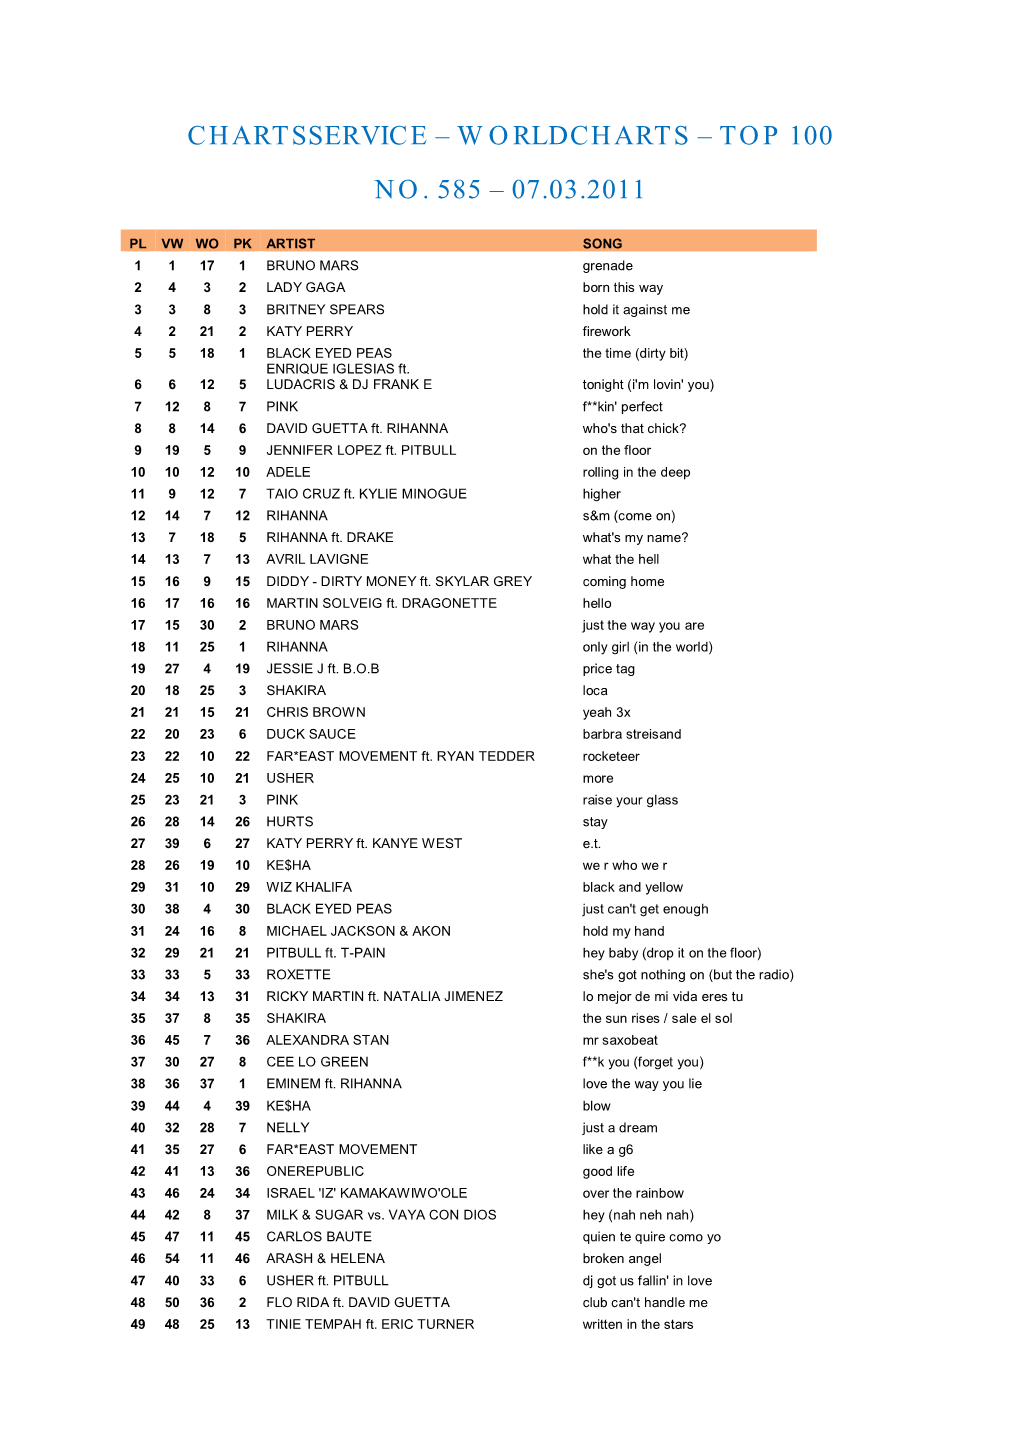 Top 100 No. 585 – 07.03.2011